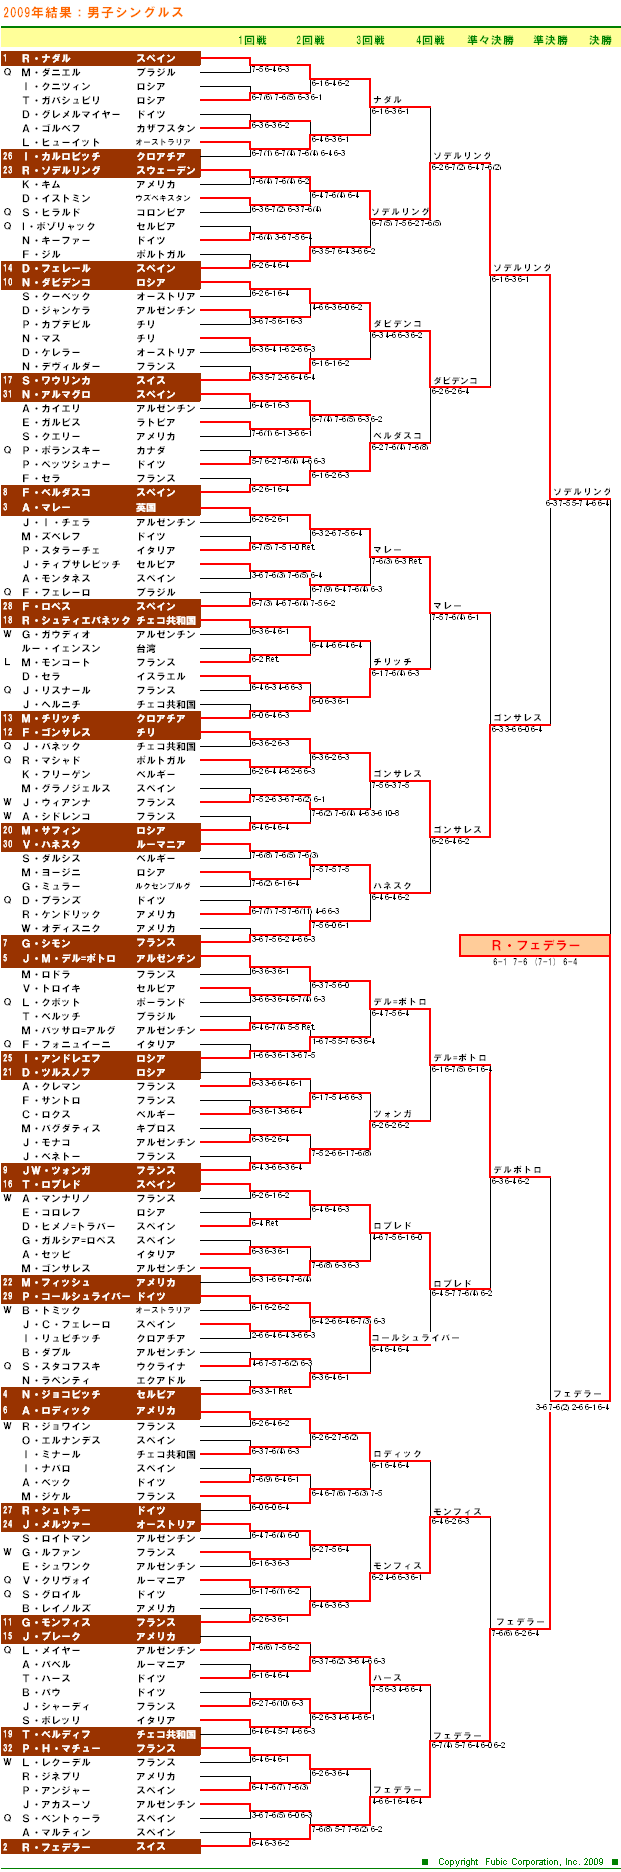 全仏オープンテニス2009　男子シングルスドロー表